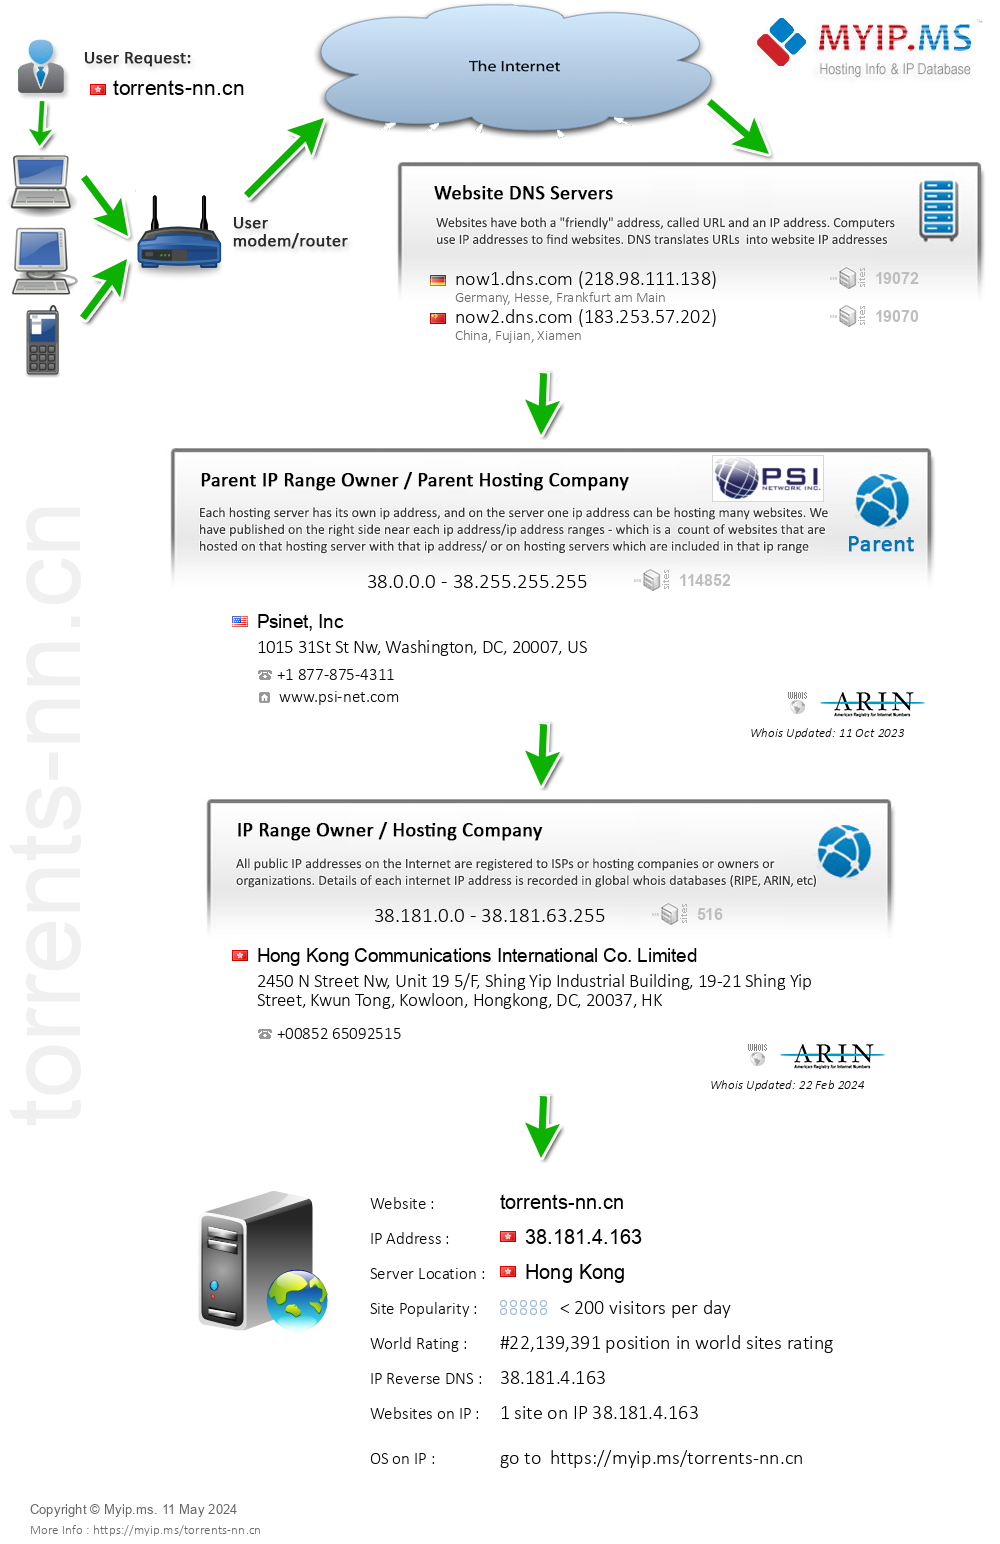 Torrents-nn.cn - Website Hosting Visual IP Diagram